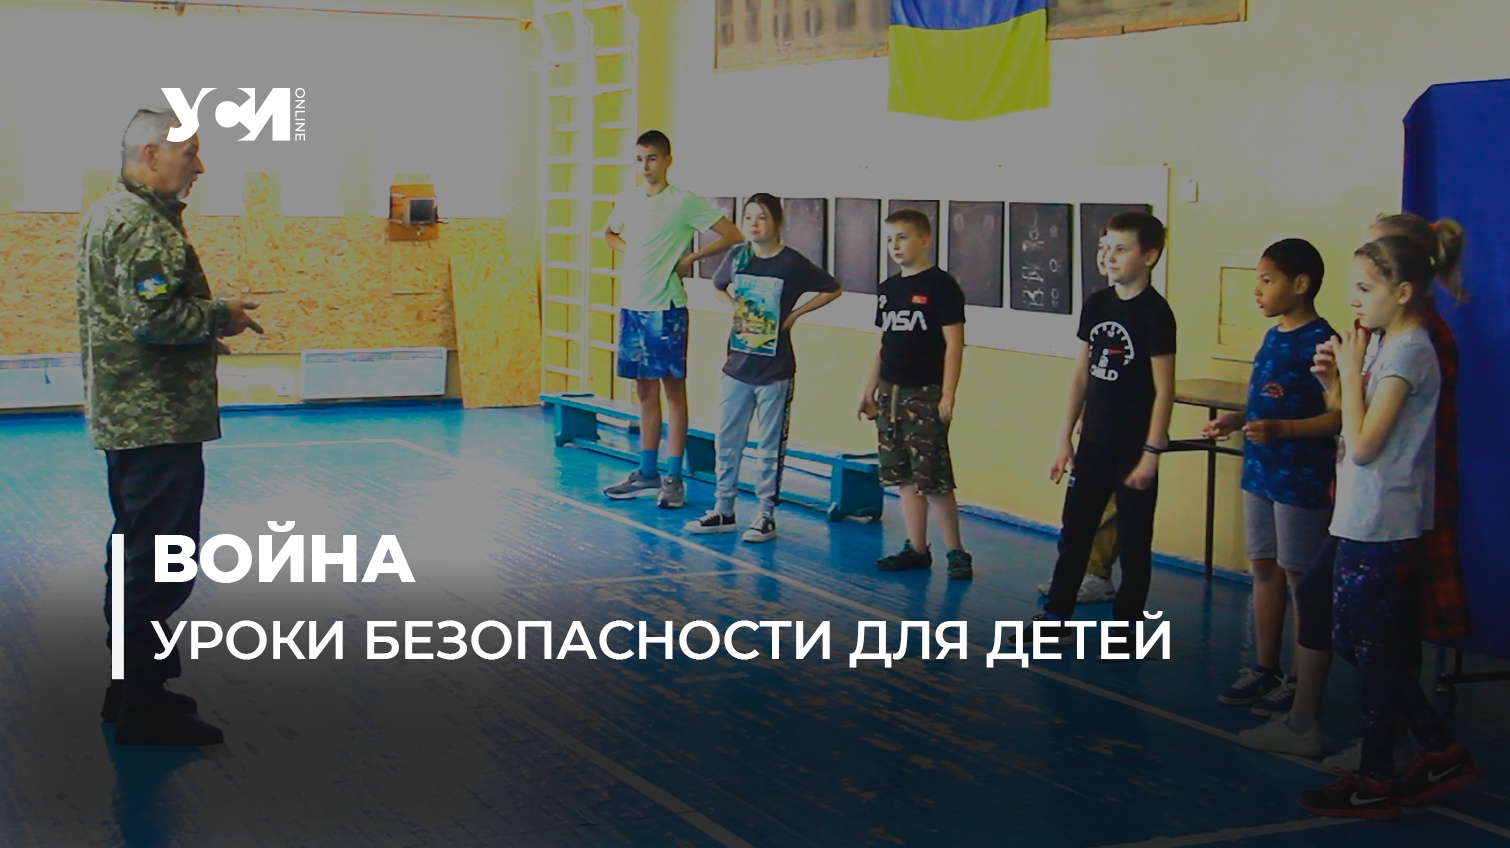 В Одессе проводят курсы молодого бойца для детей и подростков (фото, видео) «фото»